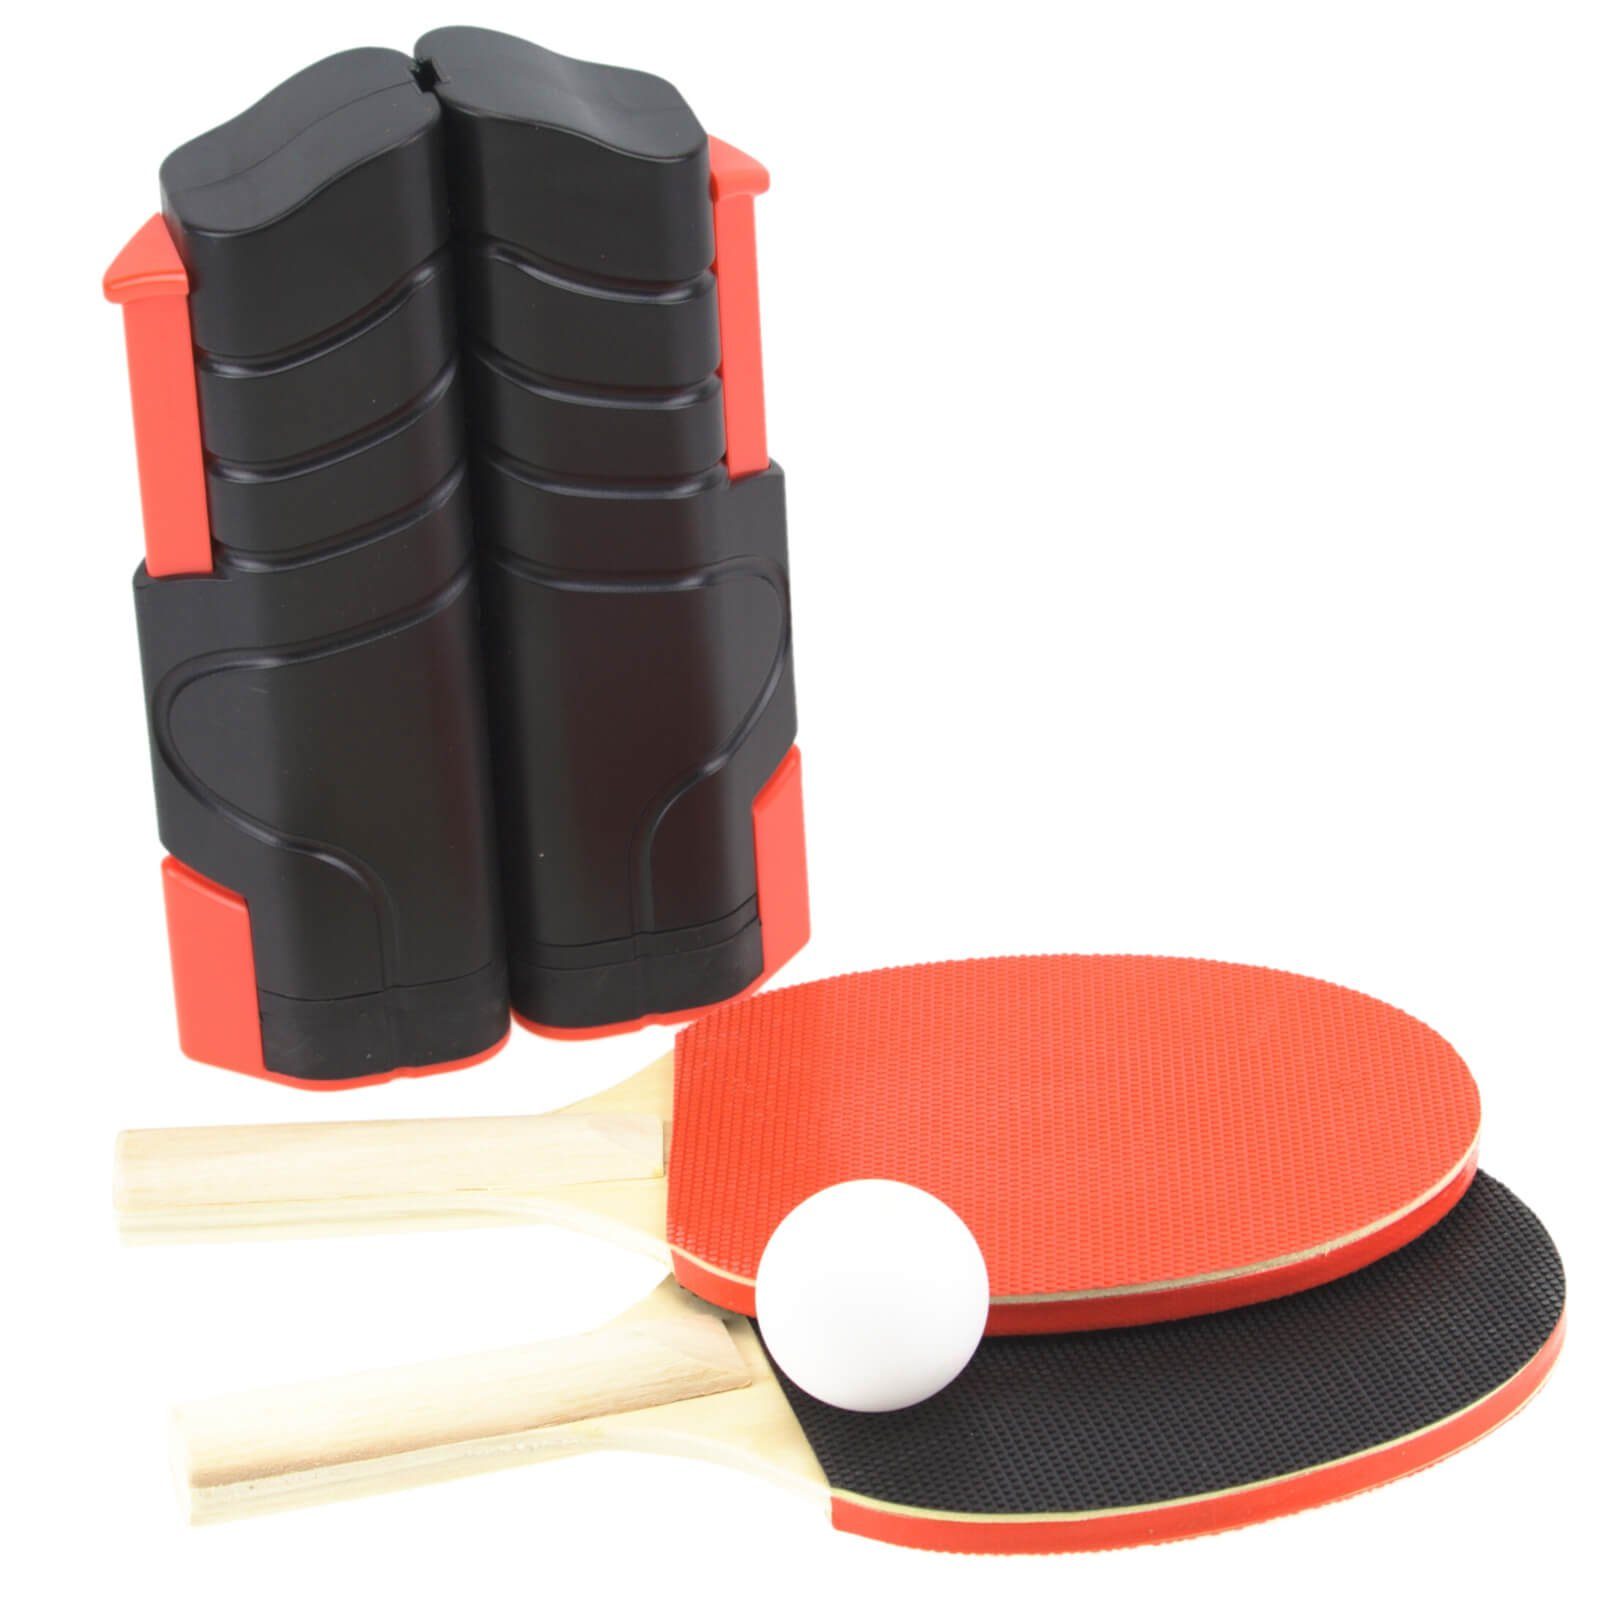 Mini Ping Pong Spiel-Set mit Tischtennis Schläger, Netz und Ball